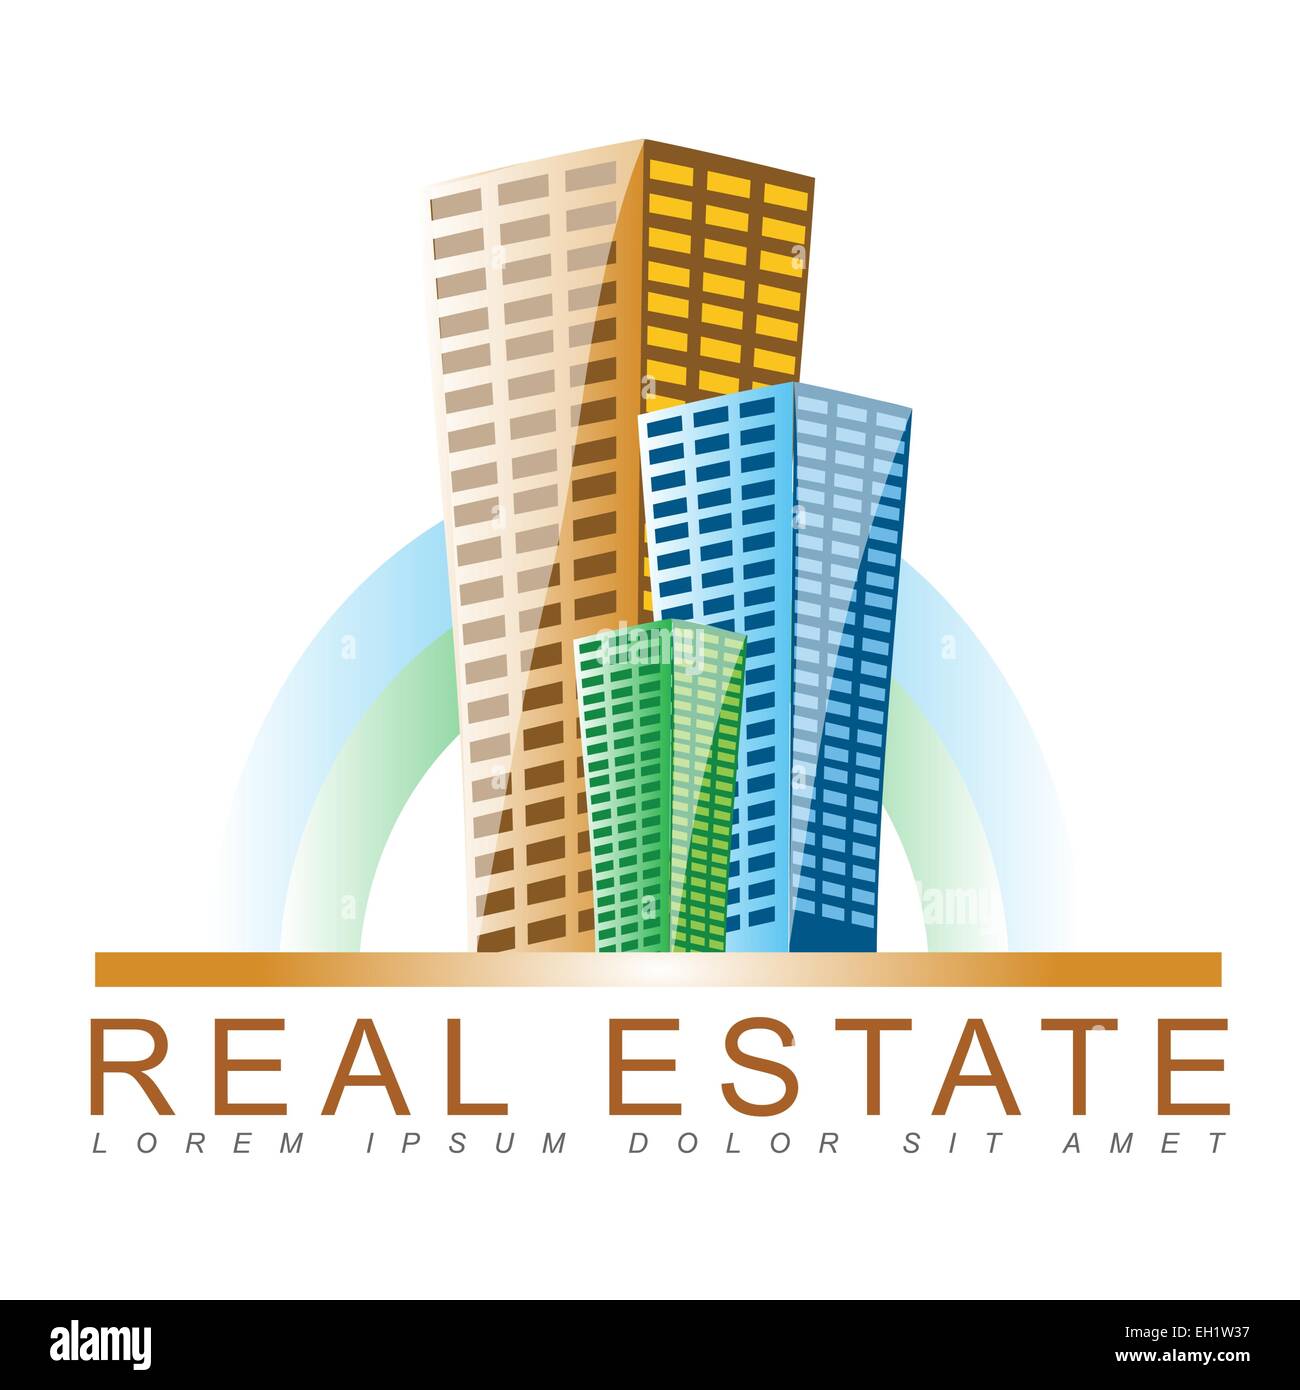 Template of a real estate logo vector Stock Photo